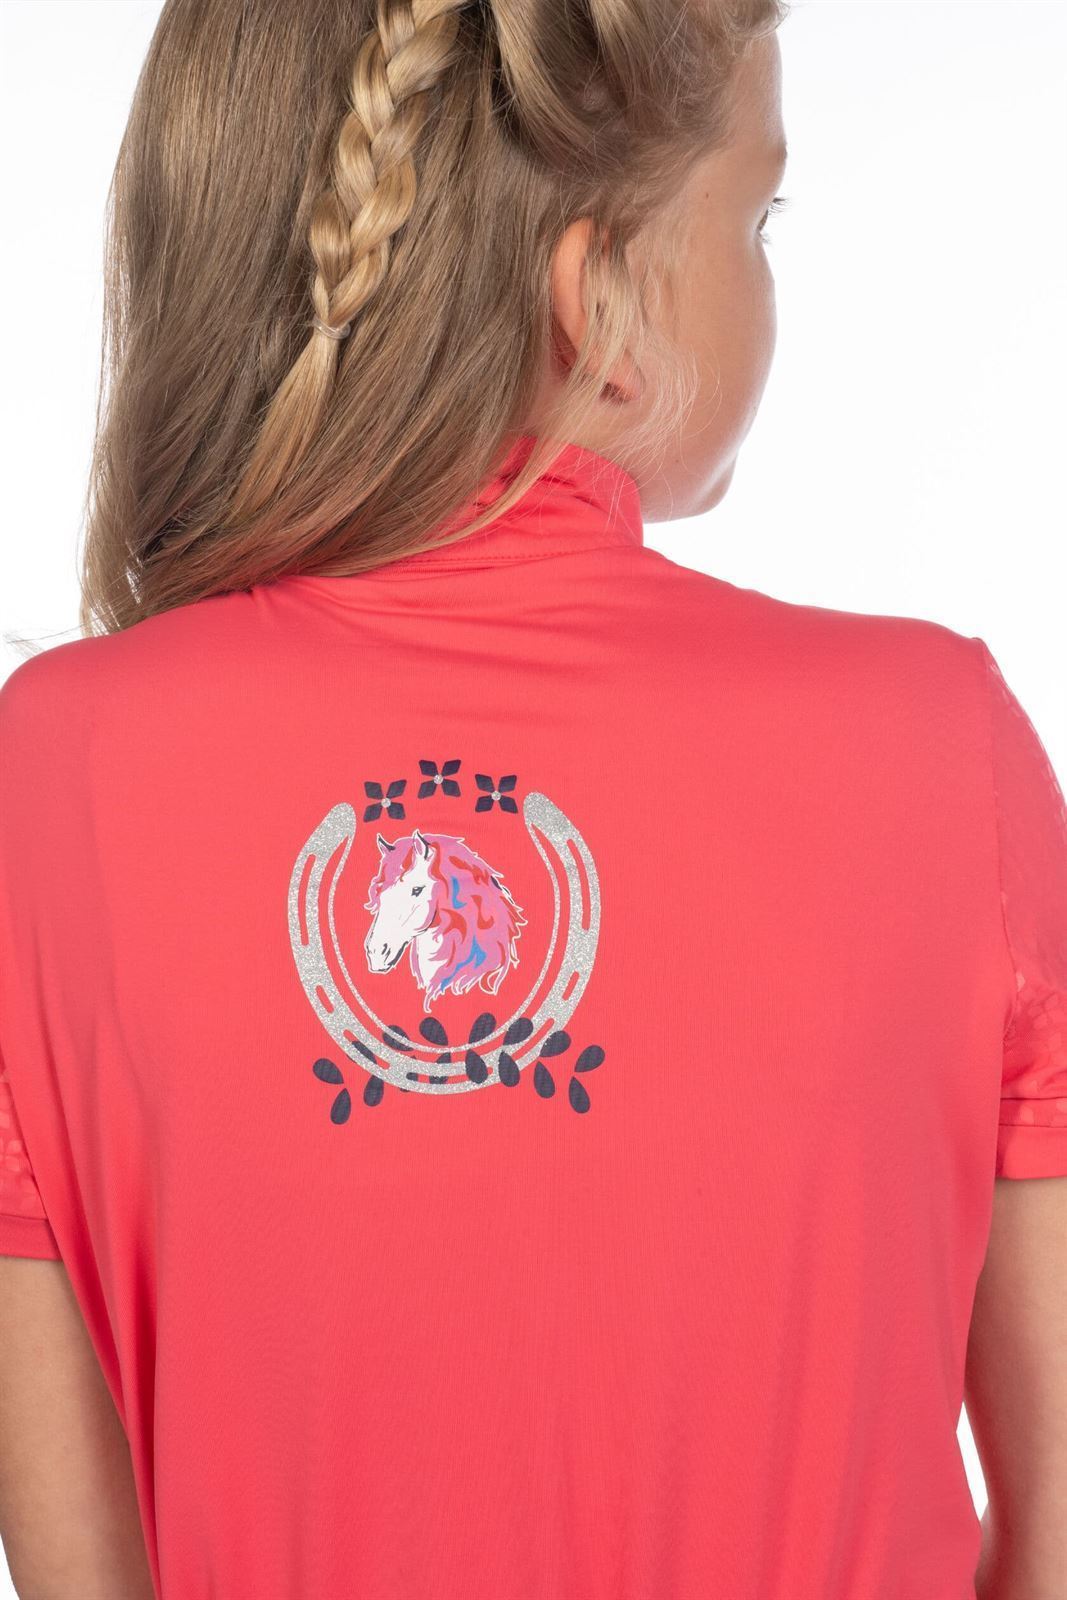 Camiseta técnica HKM Sports Equipment Aymee color rosa TALLA 140 (7-9 años) - Imagen 5